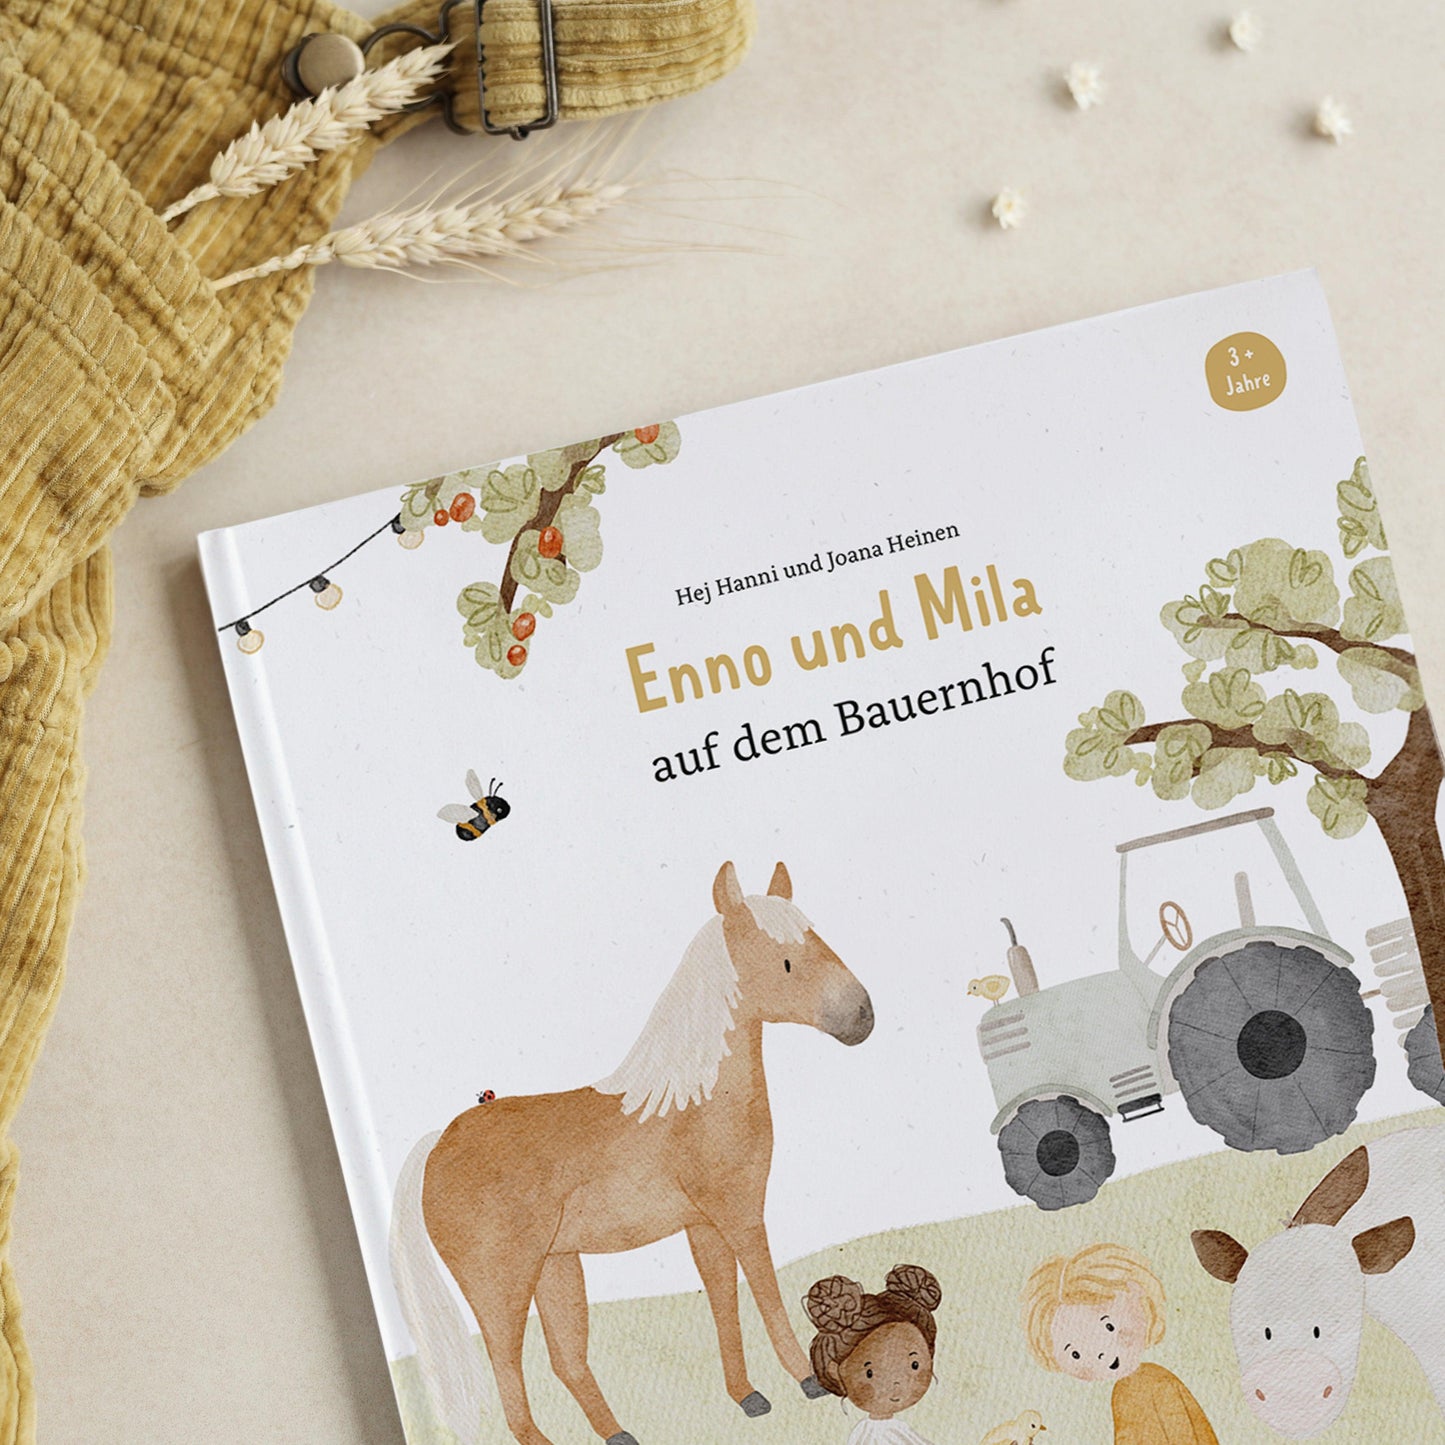 Hej Hanni & Joana Heinen • Enno und Mila auf dem Bauernhof - The Little One • Family.Concept.Store. 